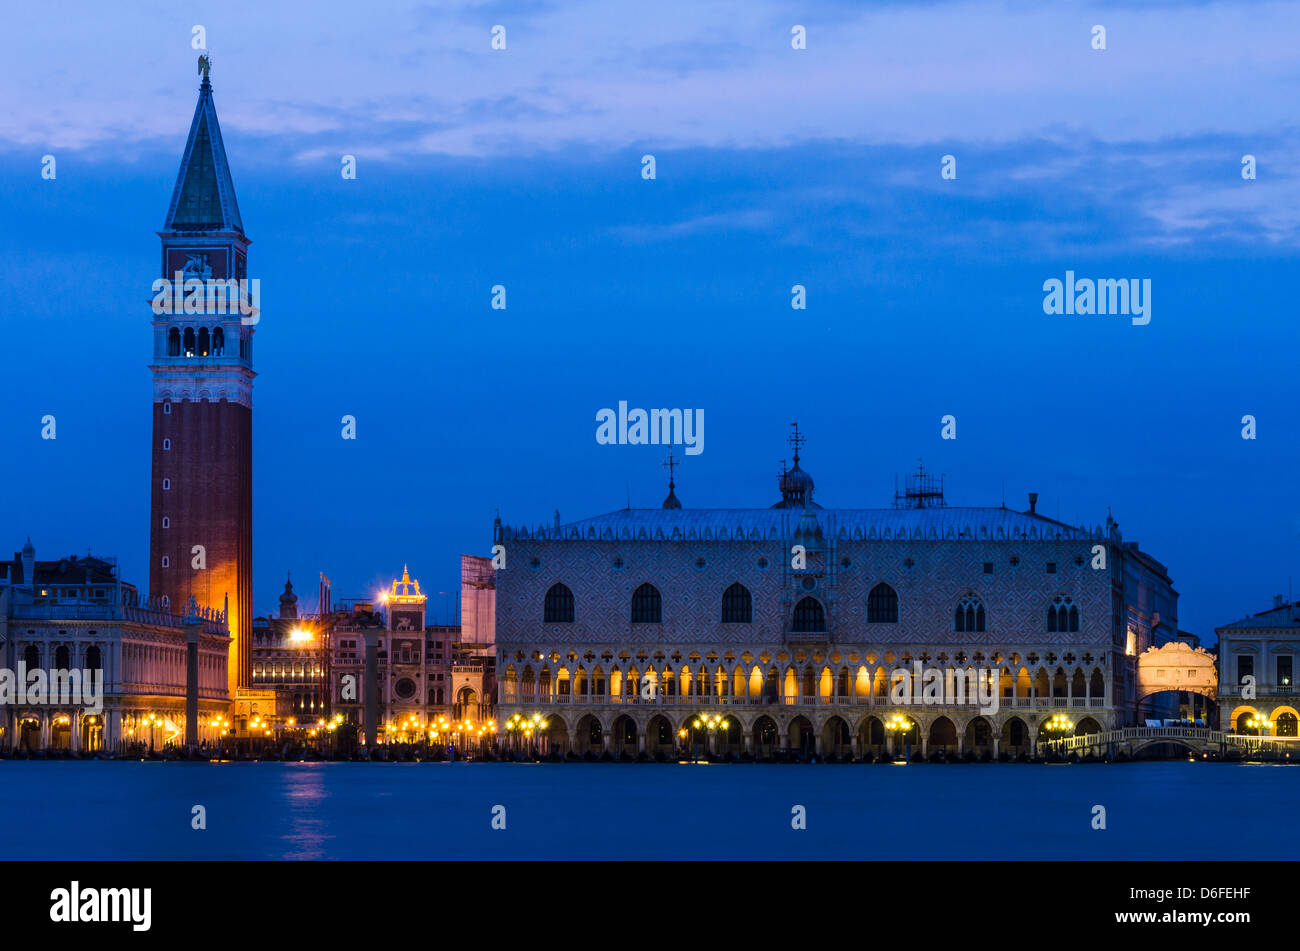 Campanile di San Marco et du Palazzo Ducale (Palais des Doges) à Venise, nuit de monument italien Banque D'Images